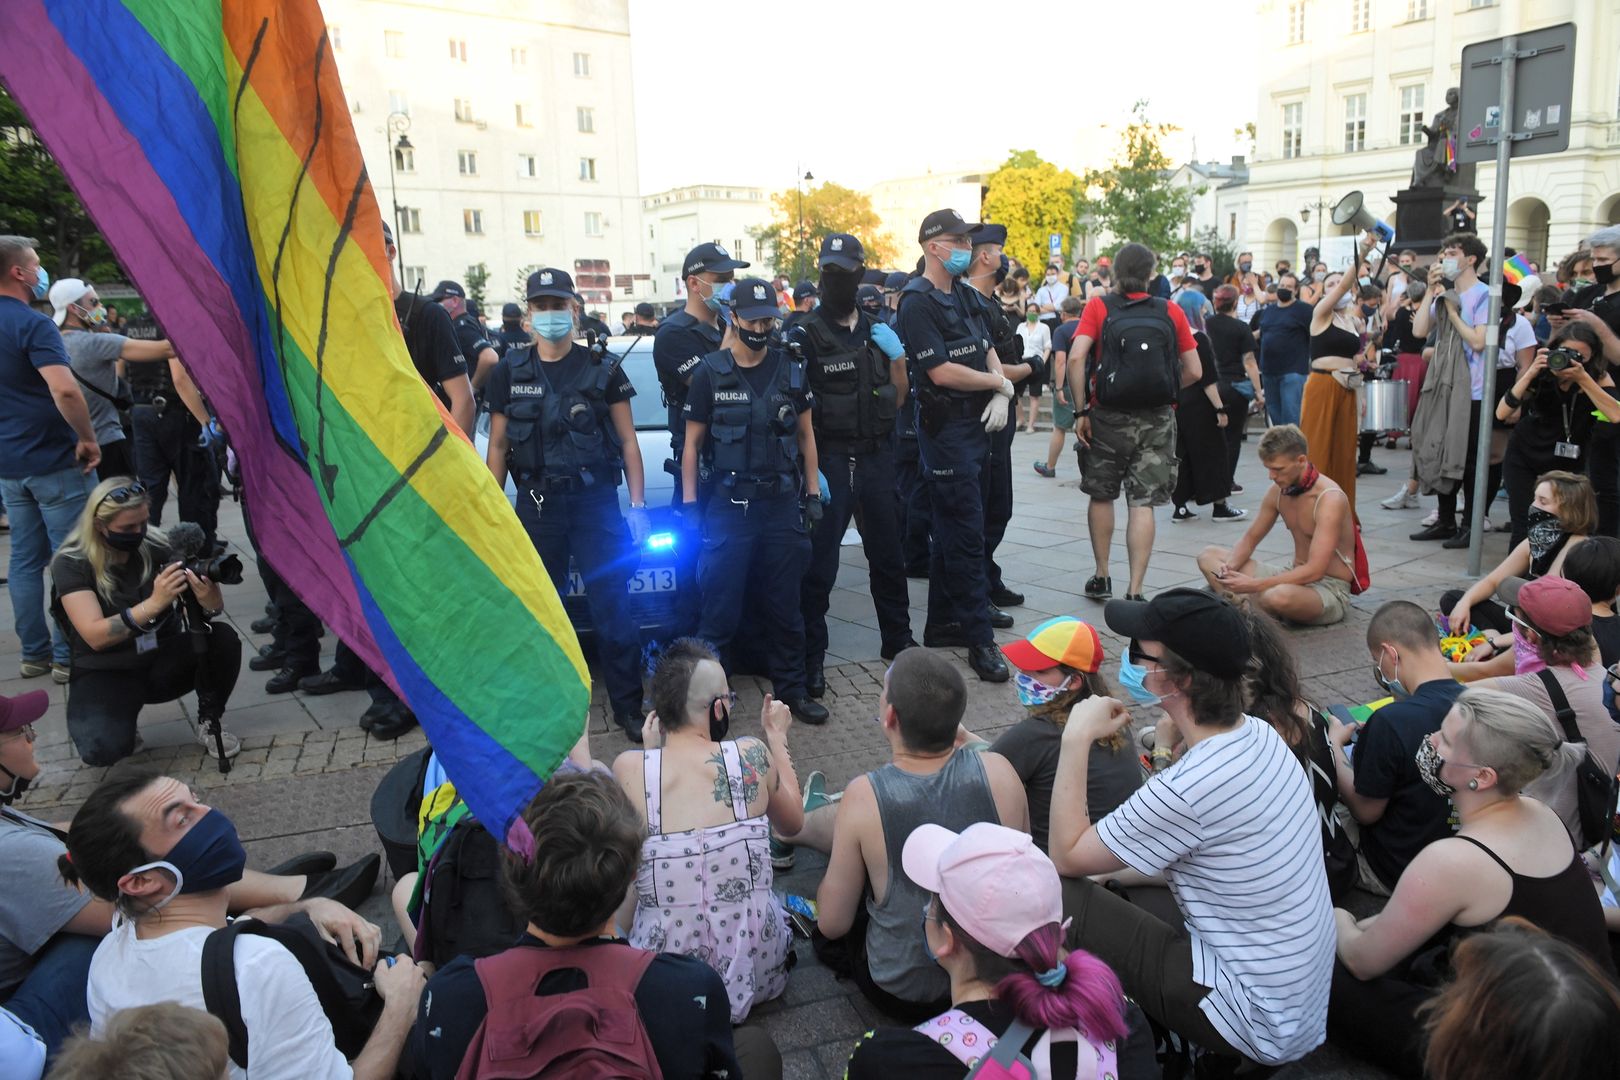 Flaga LGBT na kolejnym pomniku. Tym razem w Poznaniu